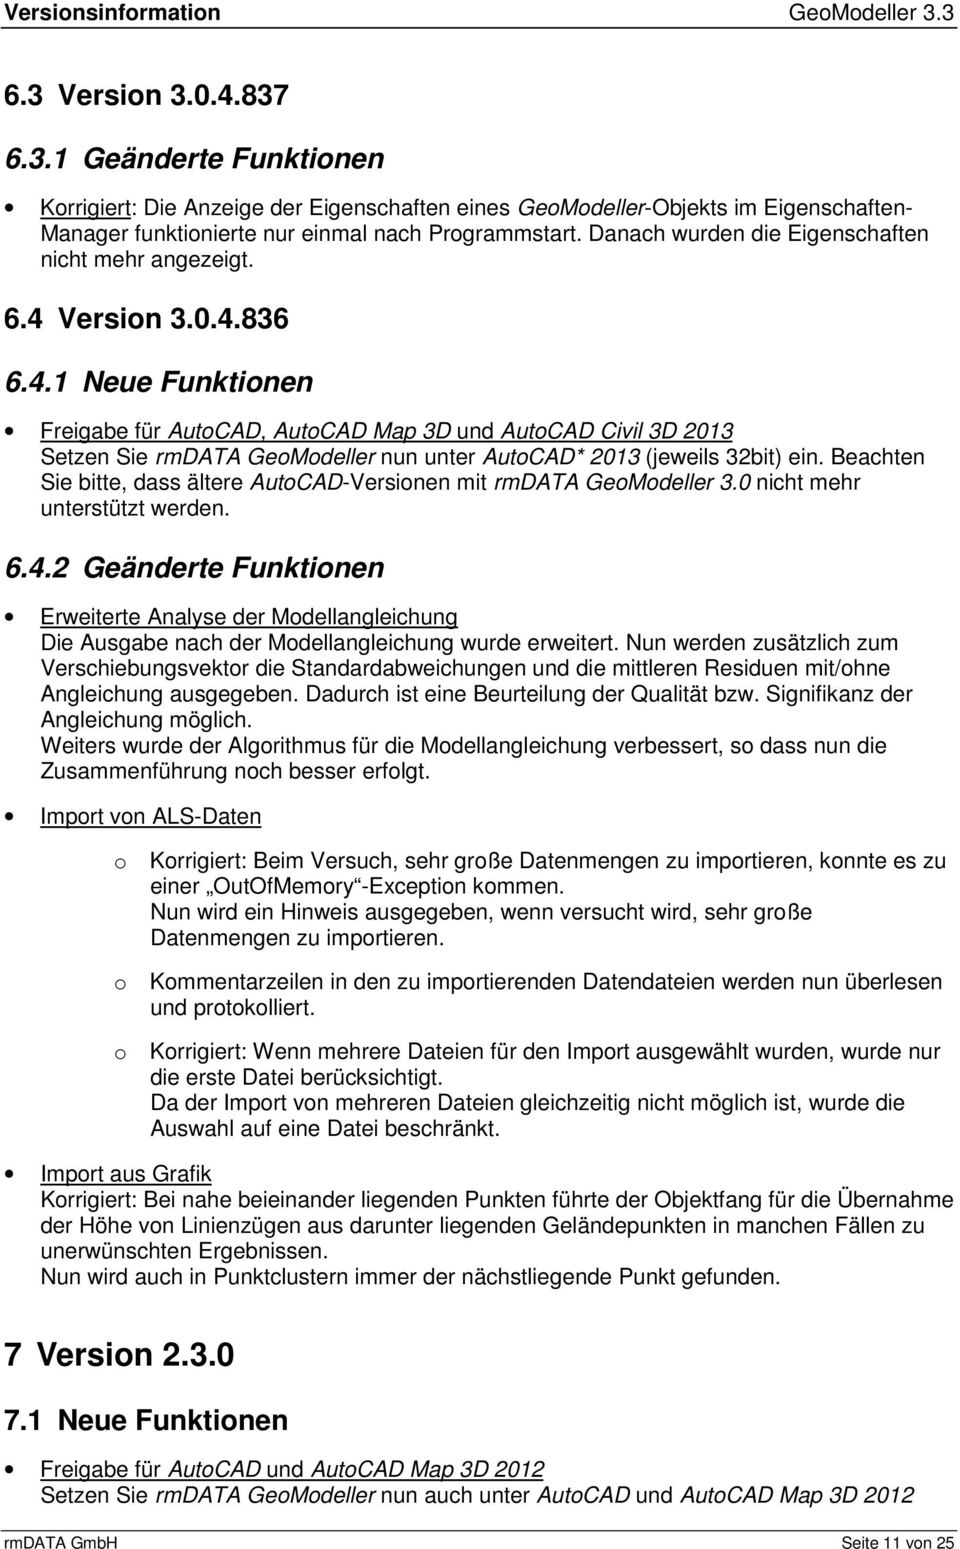 Versin 3.0.4.836 6.4.1 Neue Funktinen Freigabe für AutCAD, AutCAD Map 3D und AutCAD Civil 3D 2013 Setzen Sie rmdata GeMdeller nun unter AutCAD* 2013 (jeweils 32bit) ein.